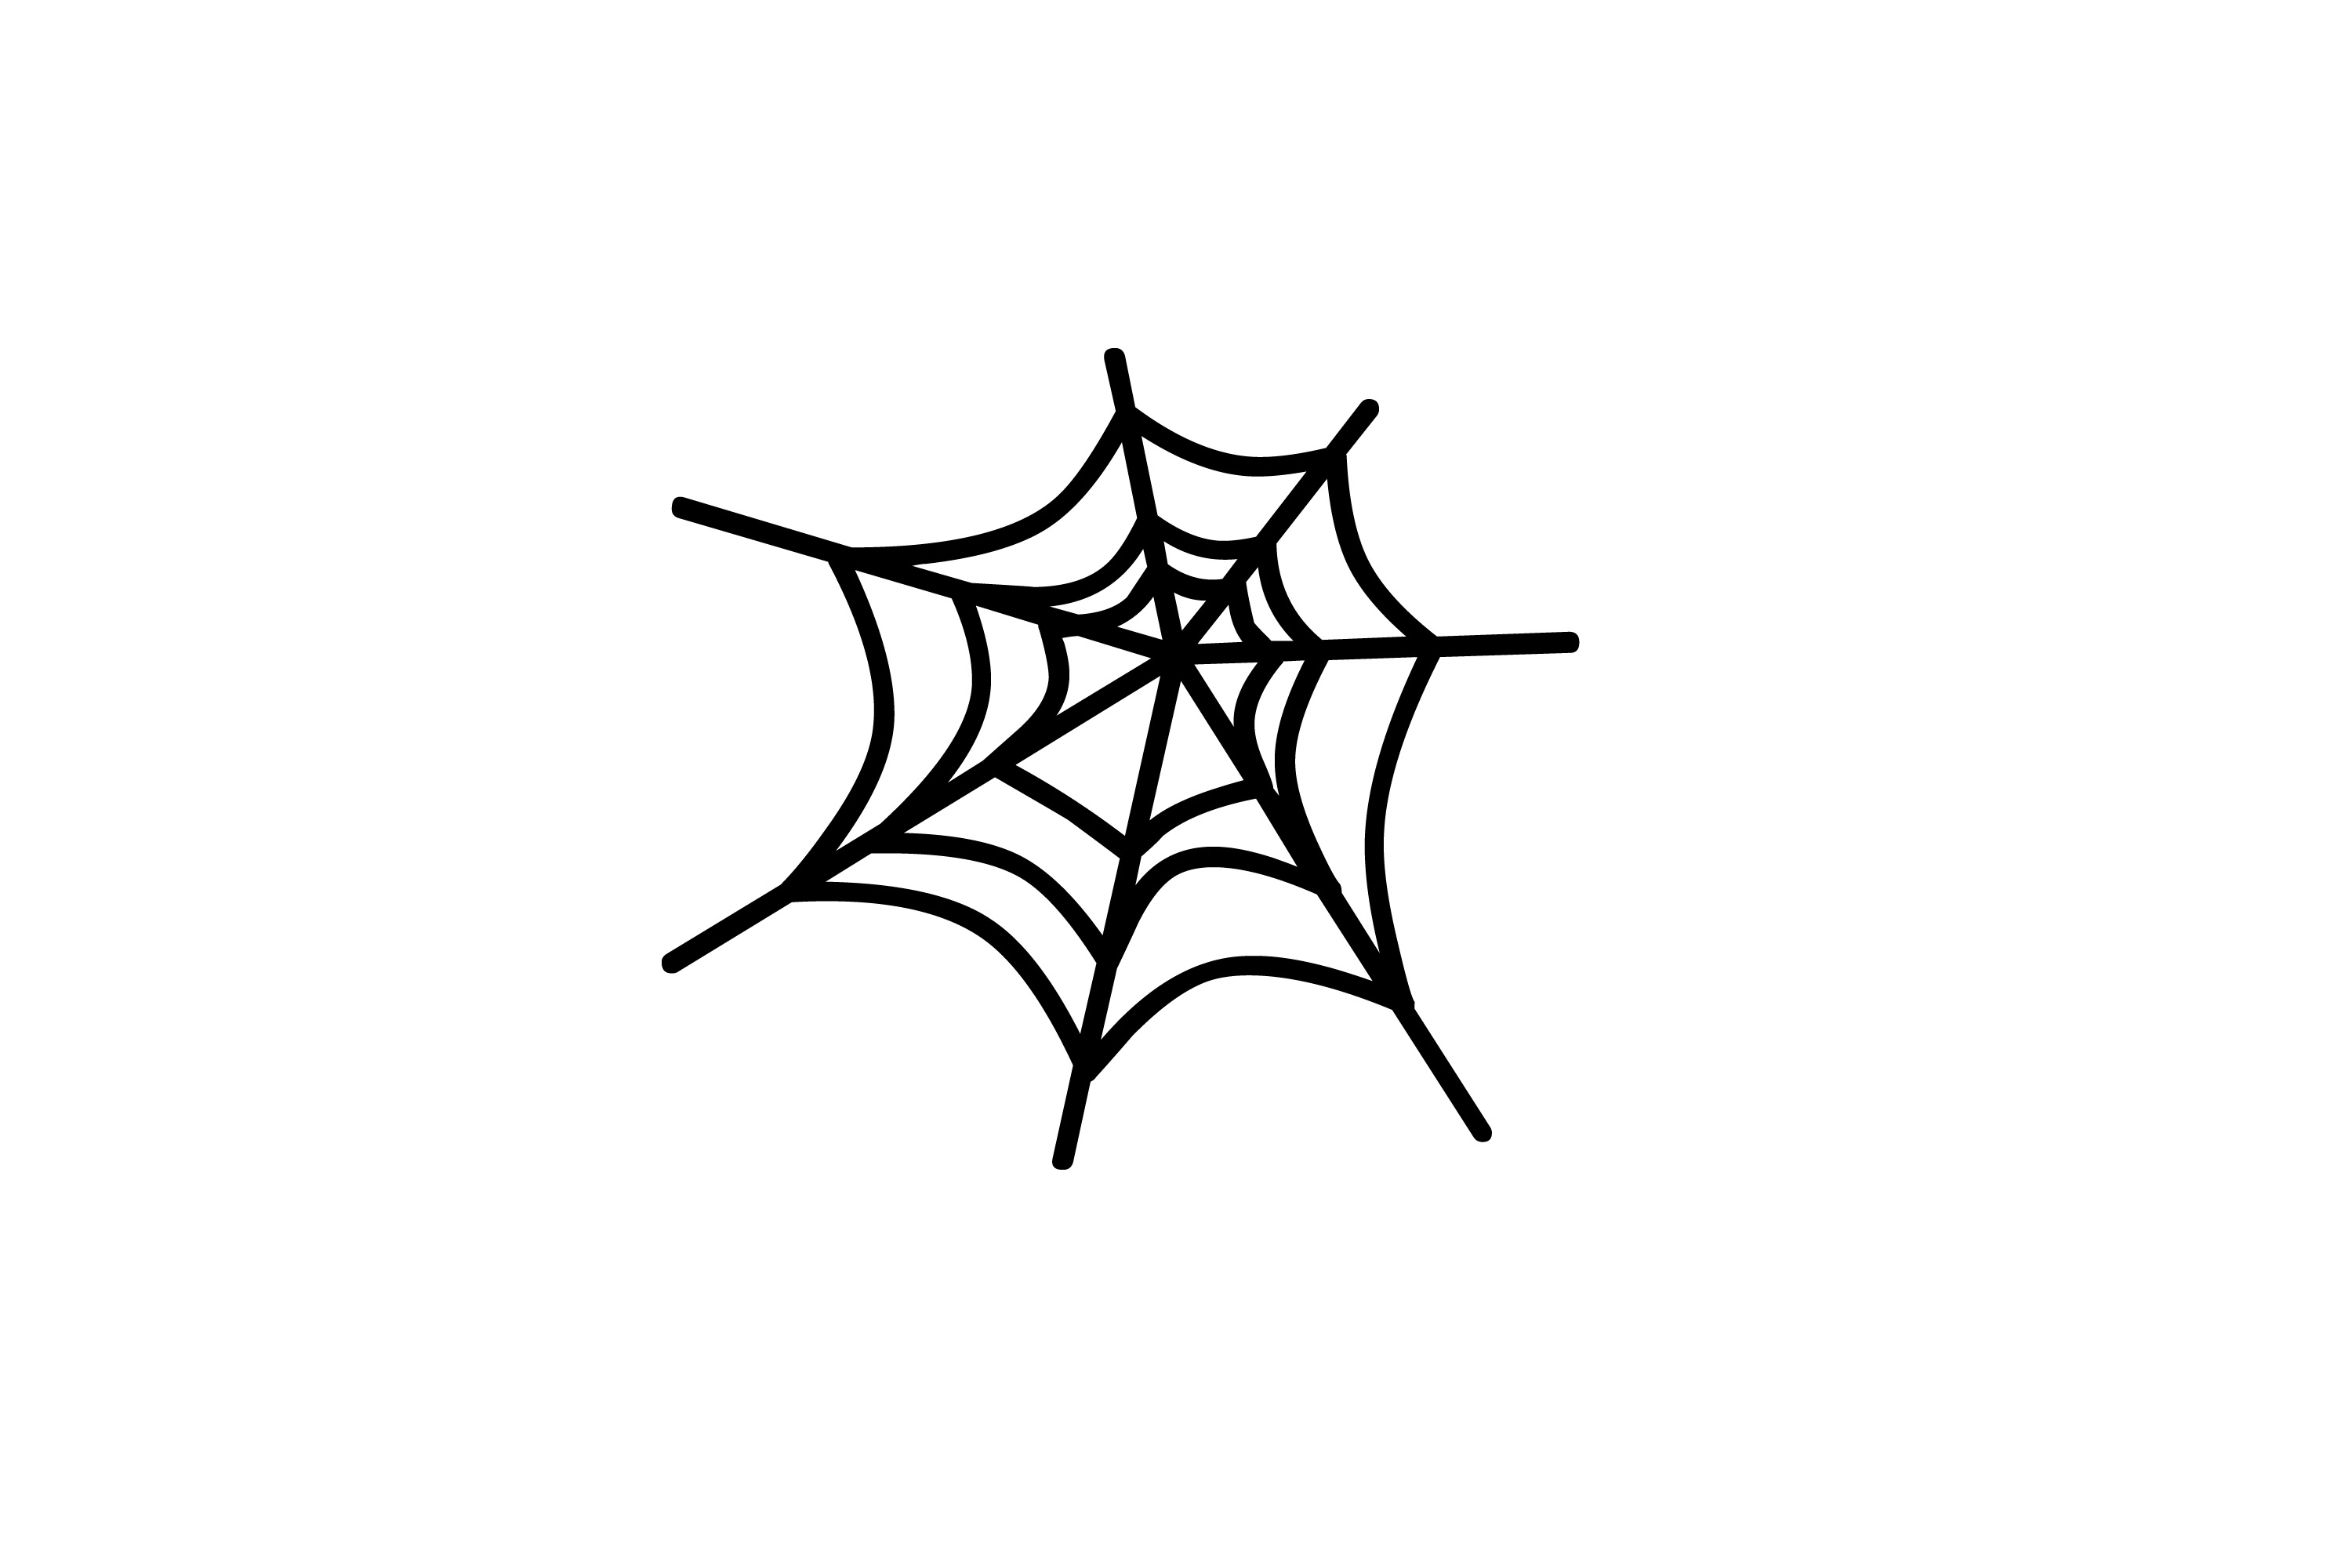 Description Spiders Web Keywords Web Cobweb Spiders Web Halloween